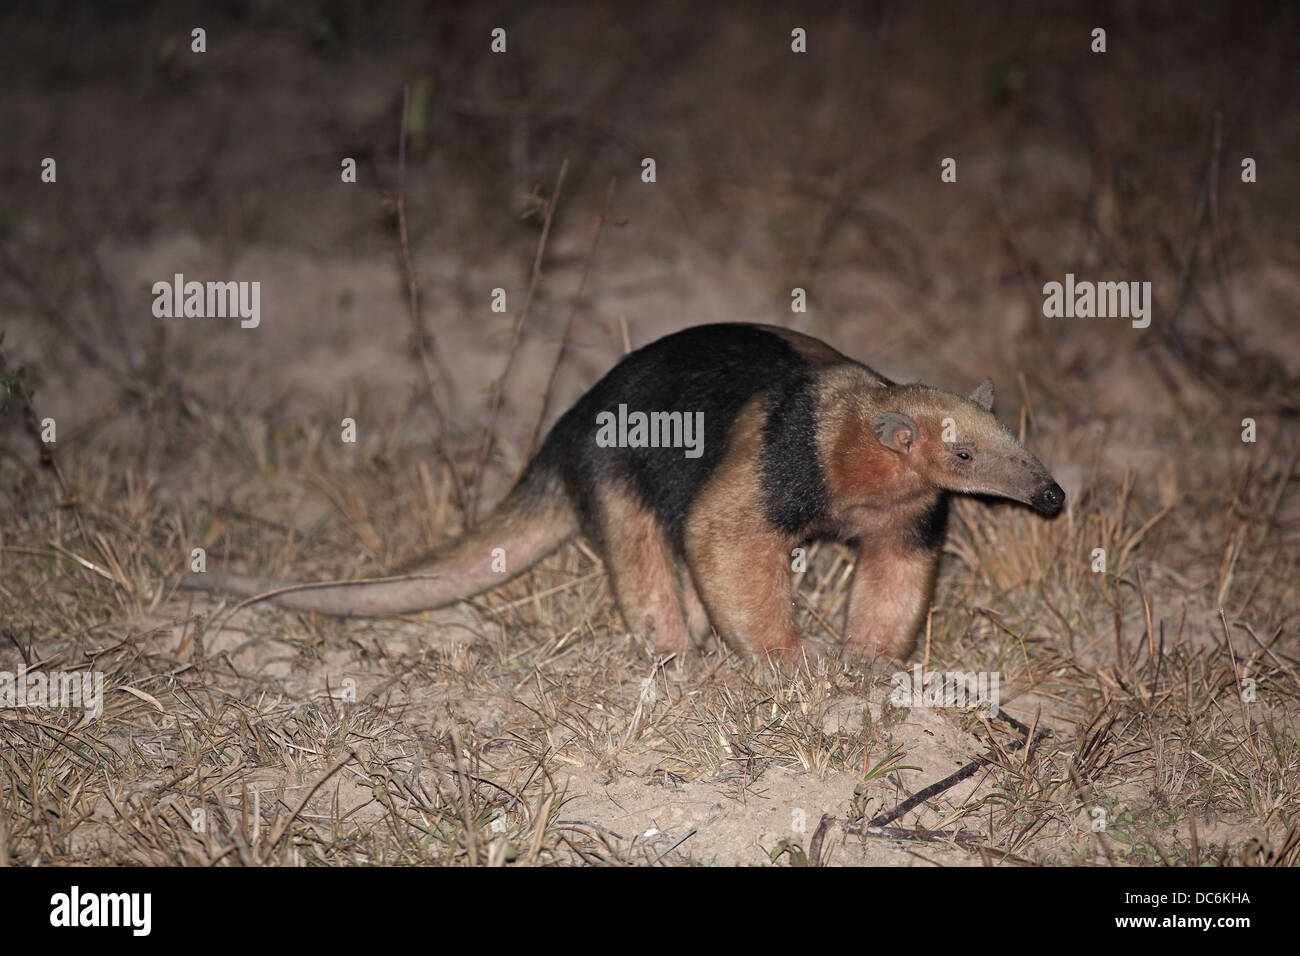 Southern Tamandua, Tamandua tetradactyla a.k.a. lesser Anteater, Collared Anteater, at night Stock Photo